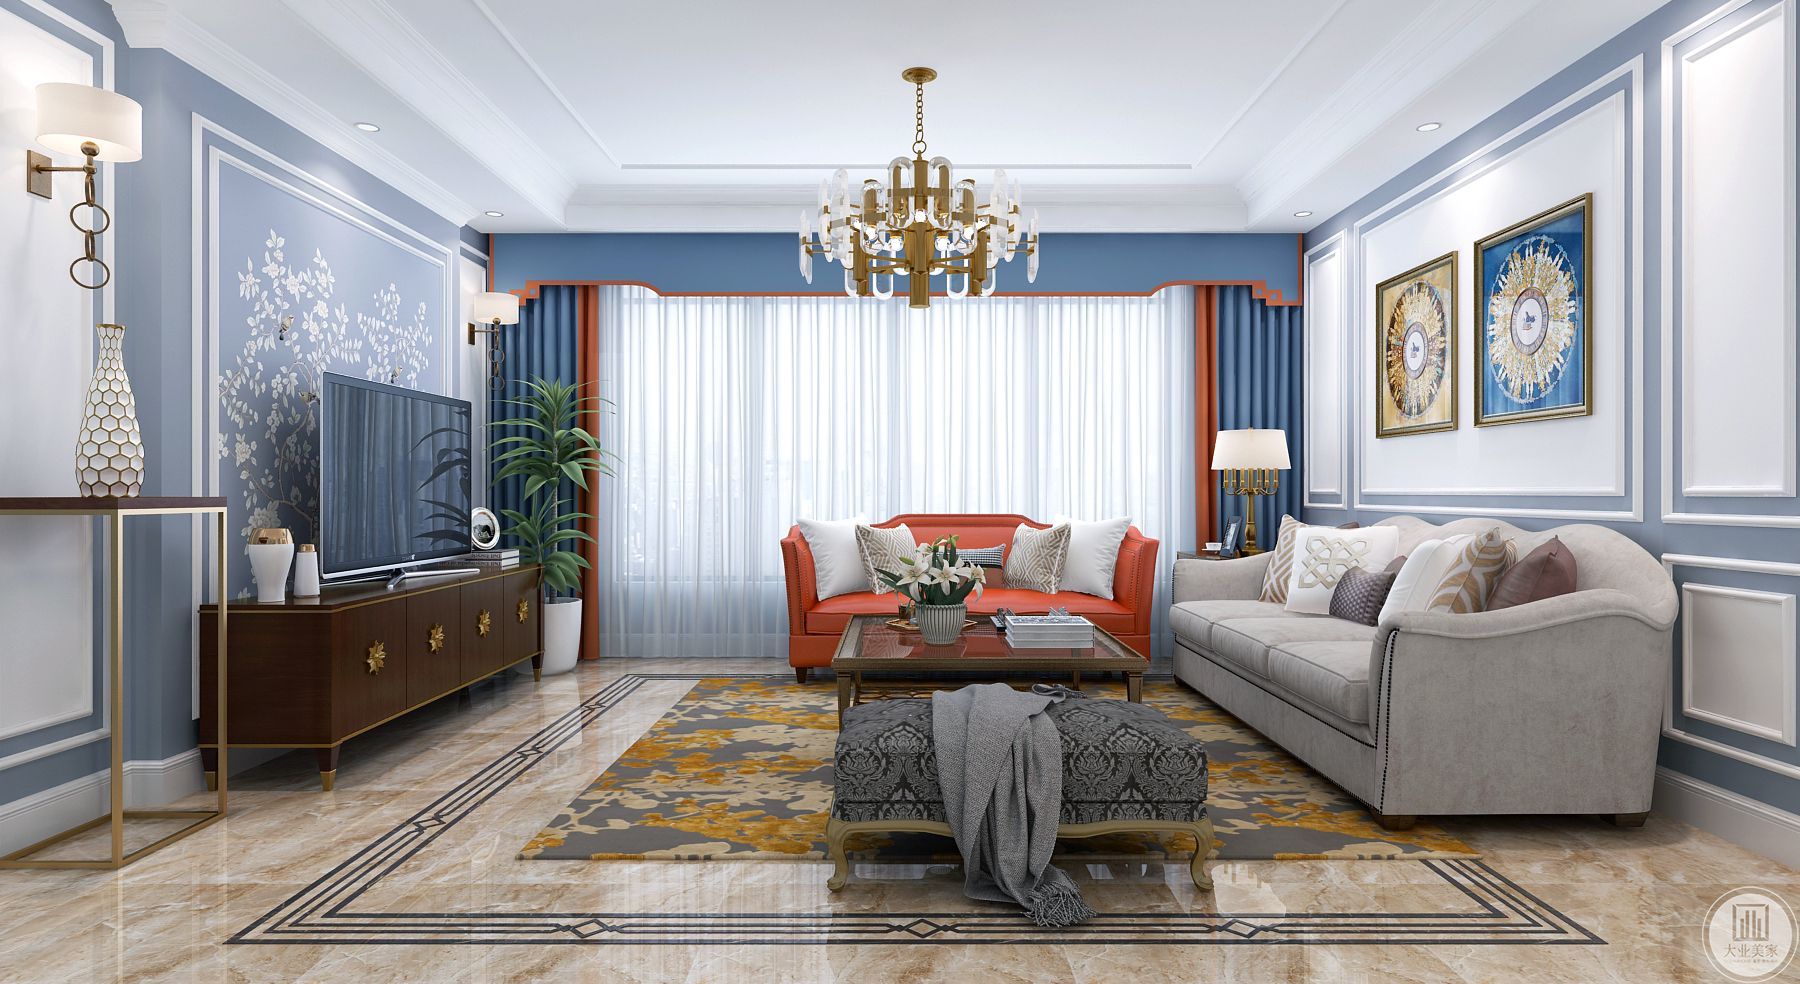 客厅整体是白色的渐进蓝色色调，透露出简单大气而又淡漠的视觉效果。乳白色的窗帘和橙色单人沙发以及茶几上的摆件又使空间多了一丝神秘。 